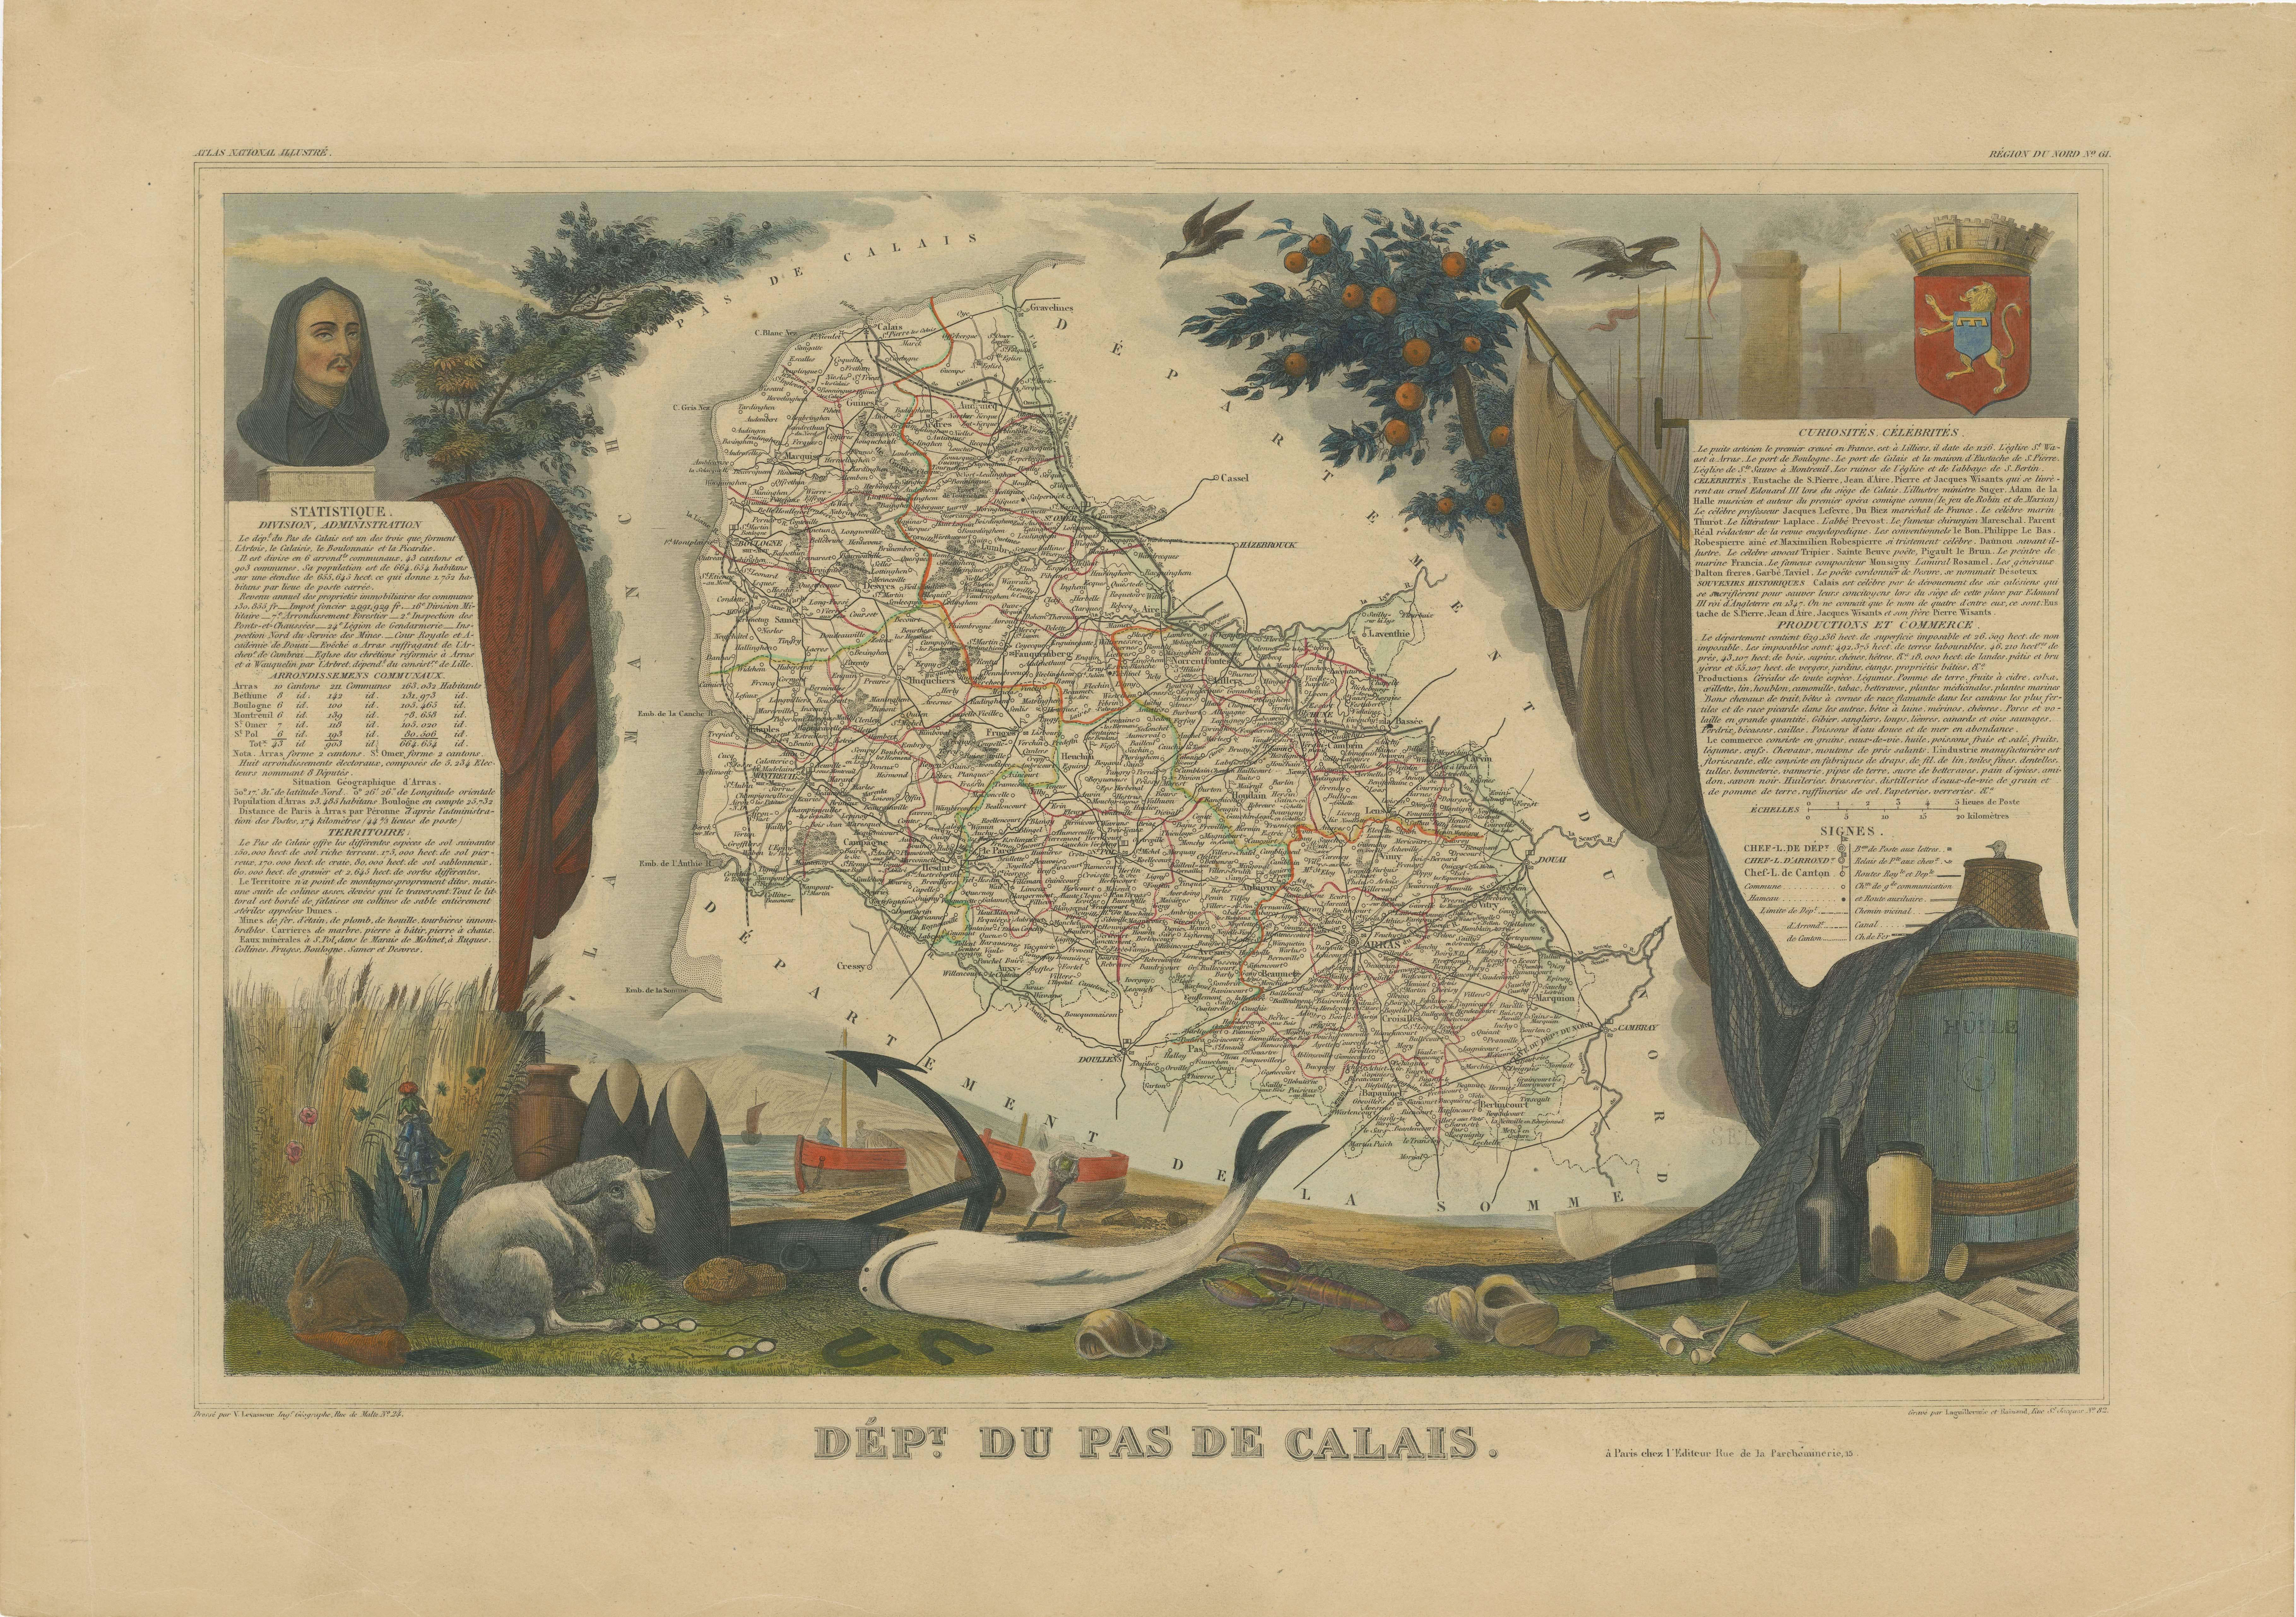 Antike Karte mit dem Titel 'Dépt. du Pas de Calais'. Karte des französischen Departements Calais, Frankreich. Dieses Gebiet ist bekannt für die Herstellung von Maroilles, einem Weichkäse aus Kuhmilch mit gewaschener Rinde. Die Karte selbst ist von